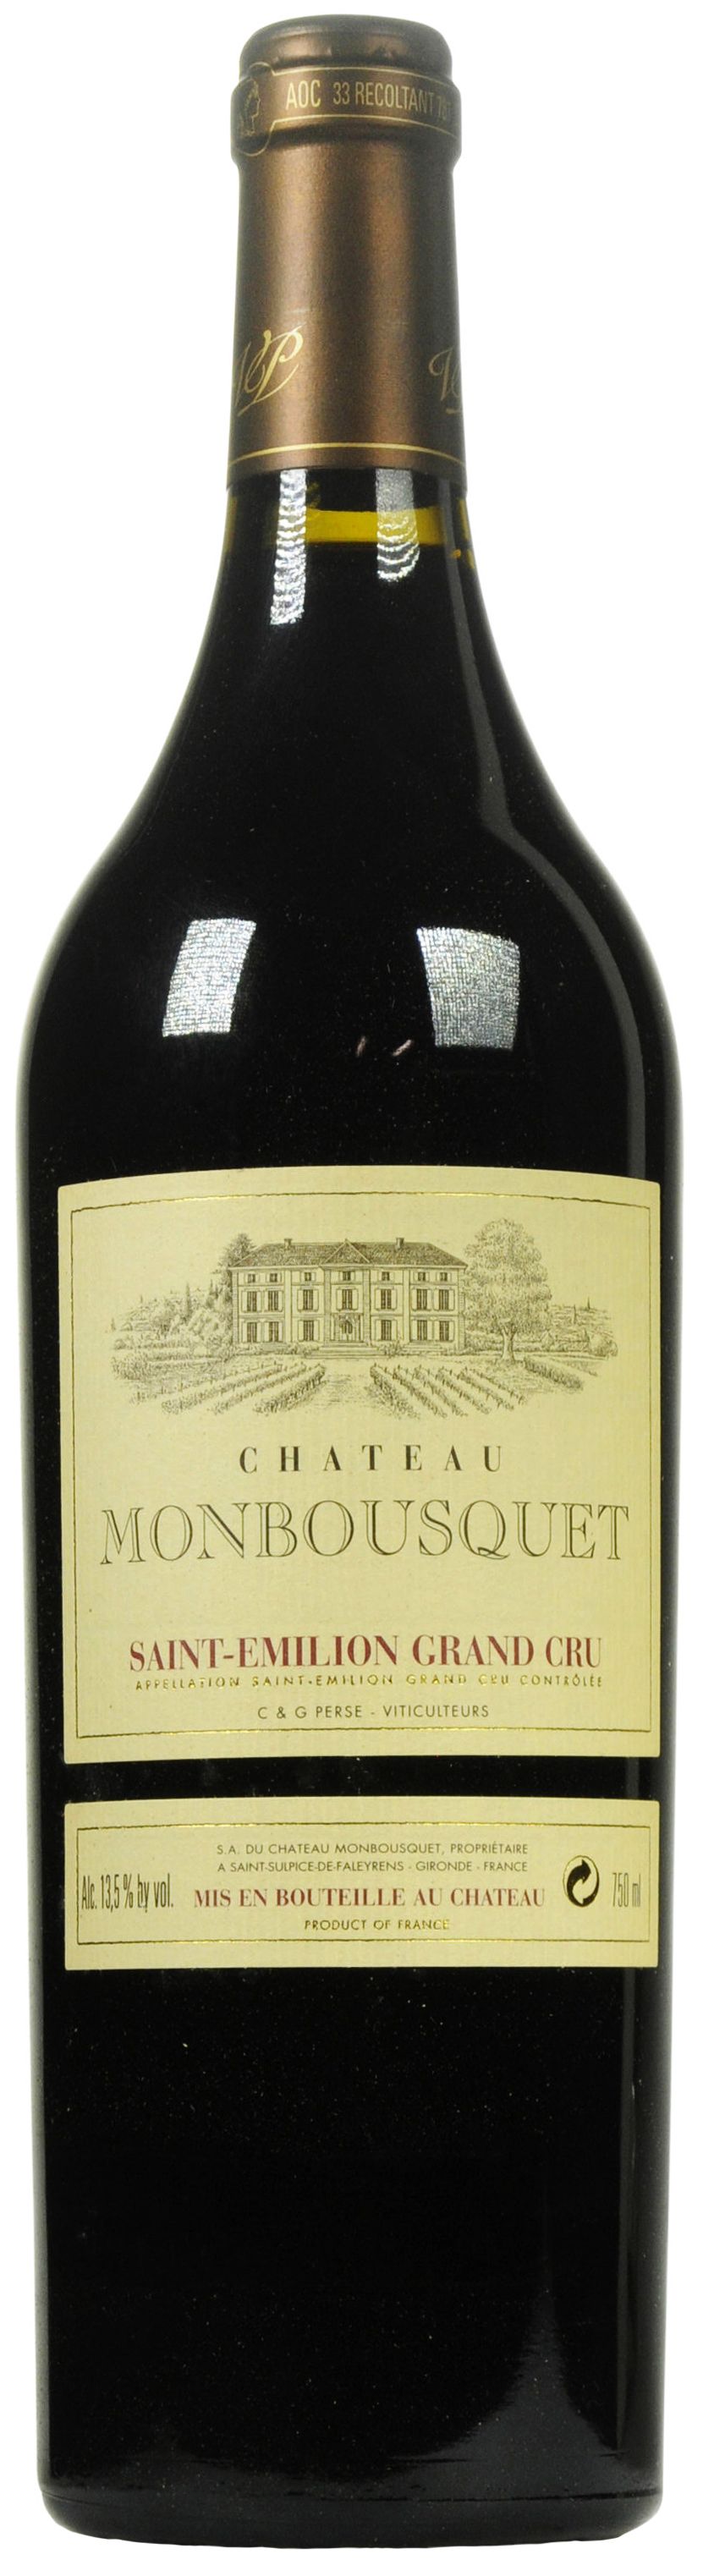 Chateau Monbousquet, Grand Cru Classe, 2002